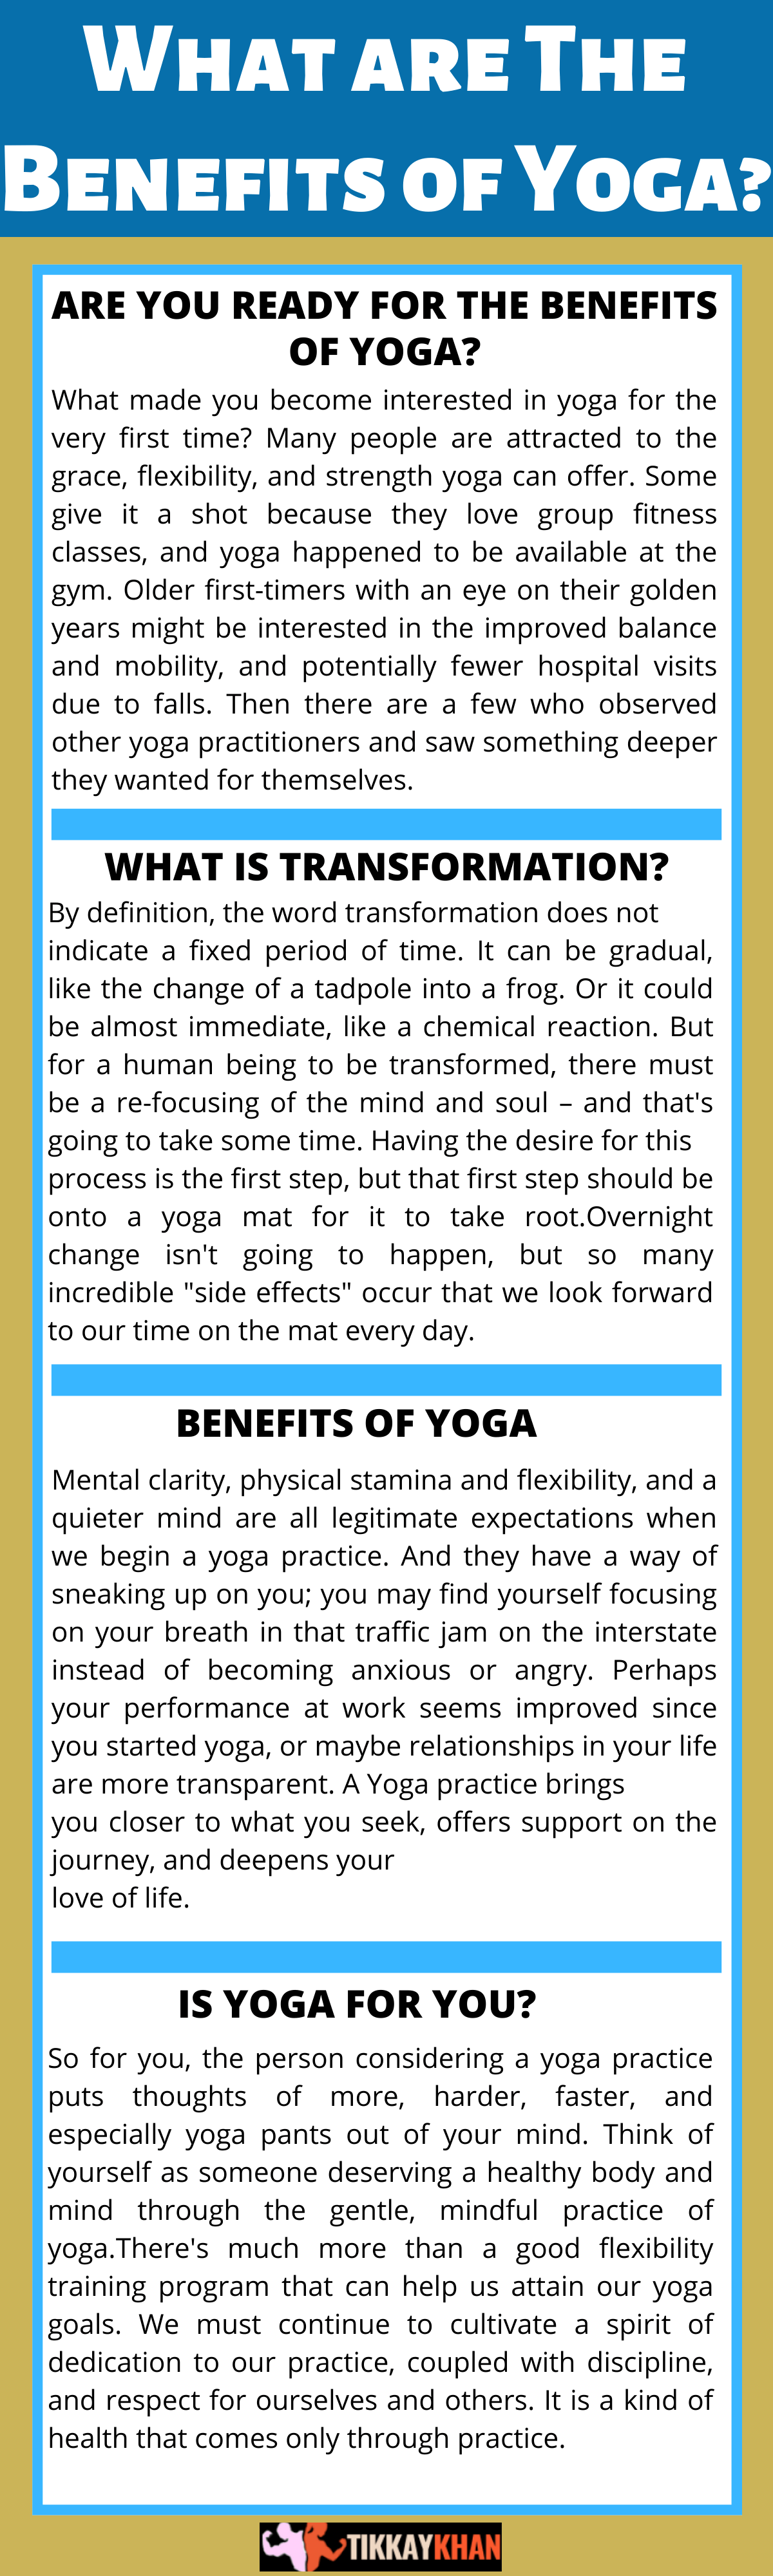 Benifits of Yoga